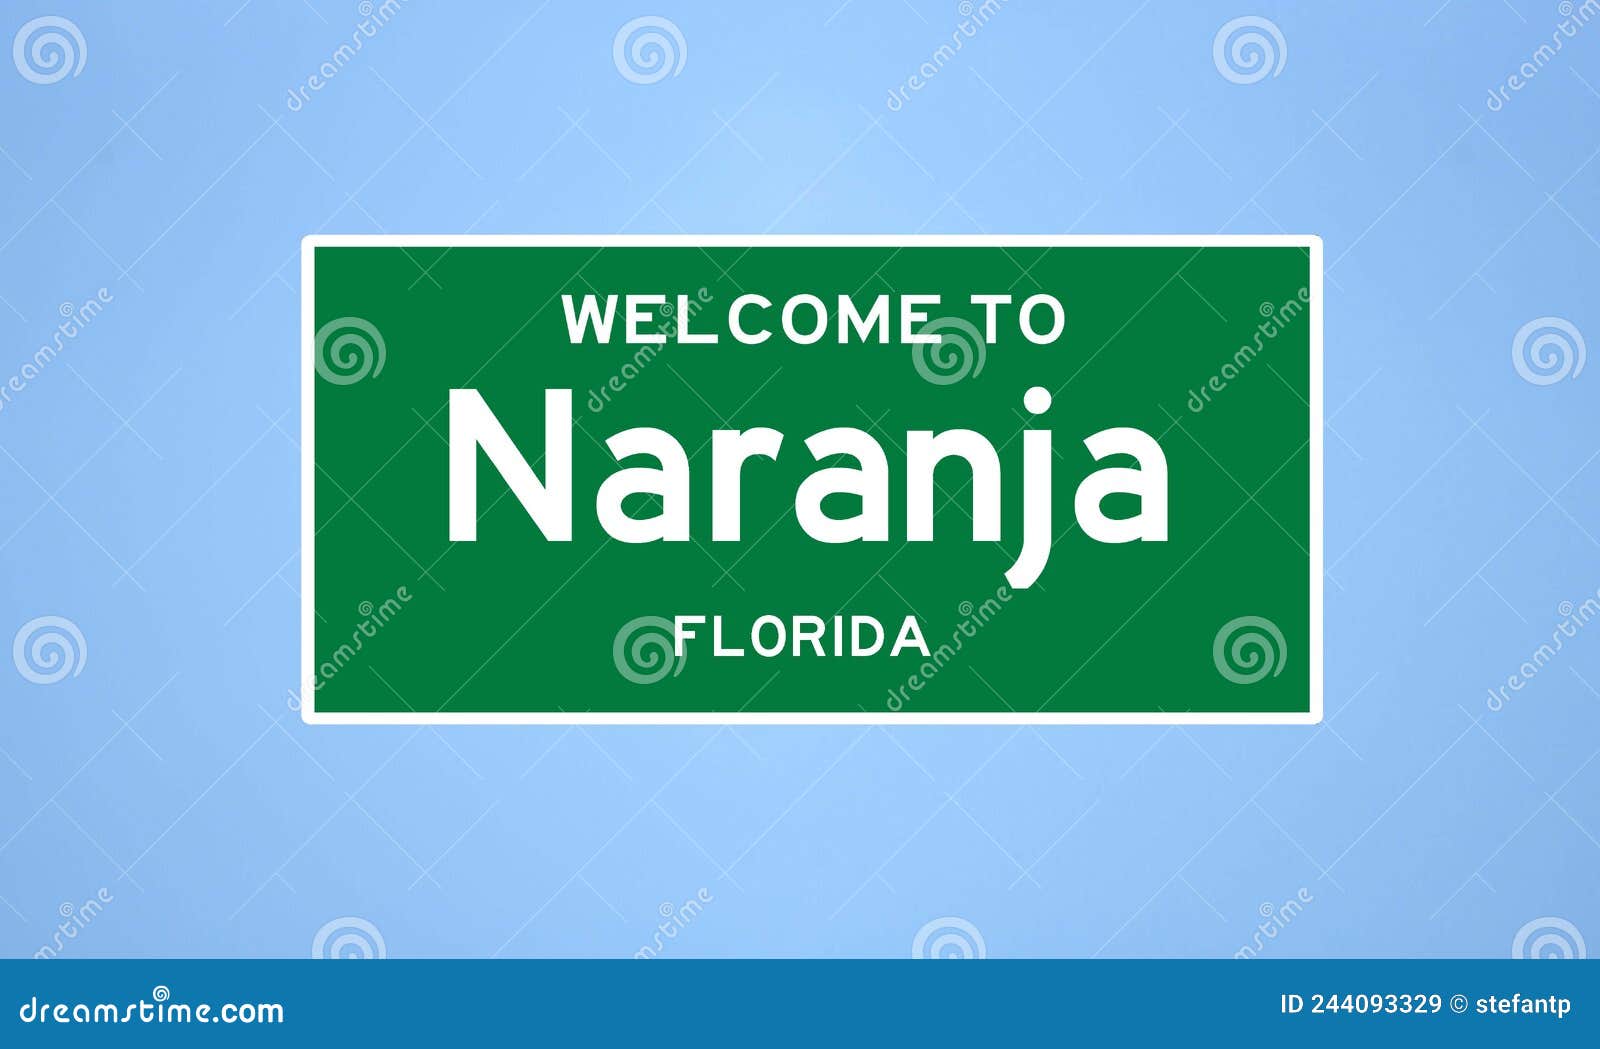 naranja, florida city limit sign. town sign from the usa.